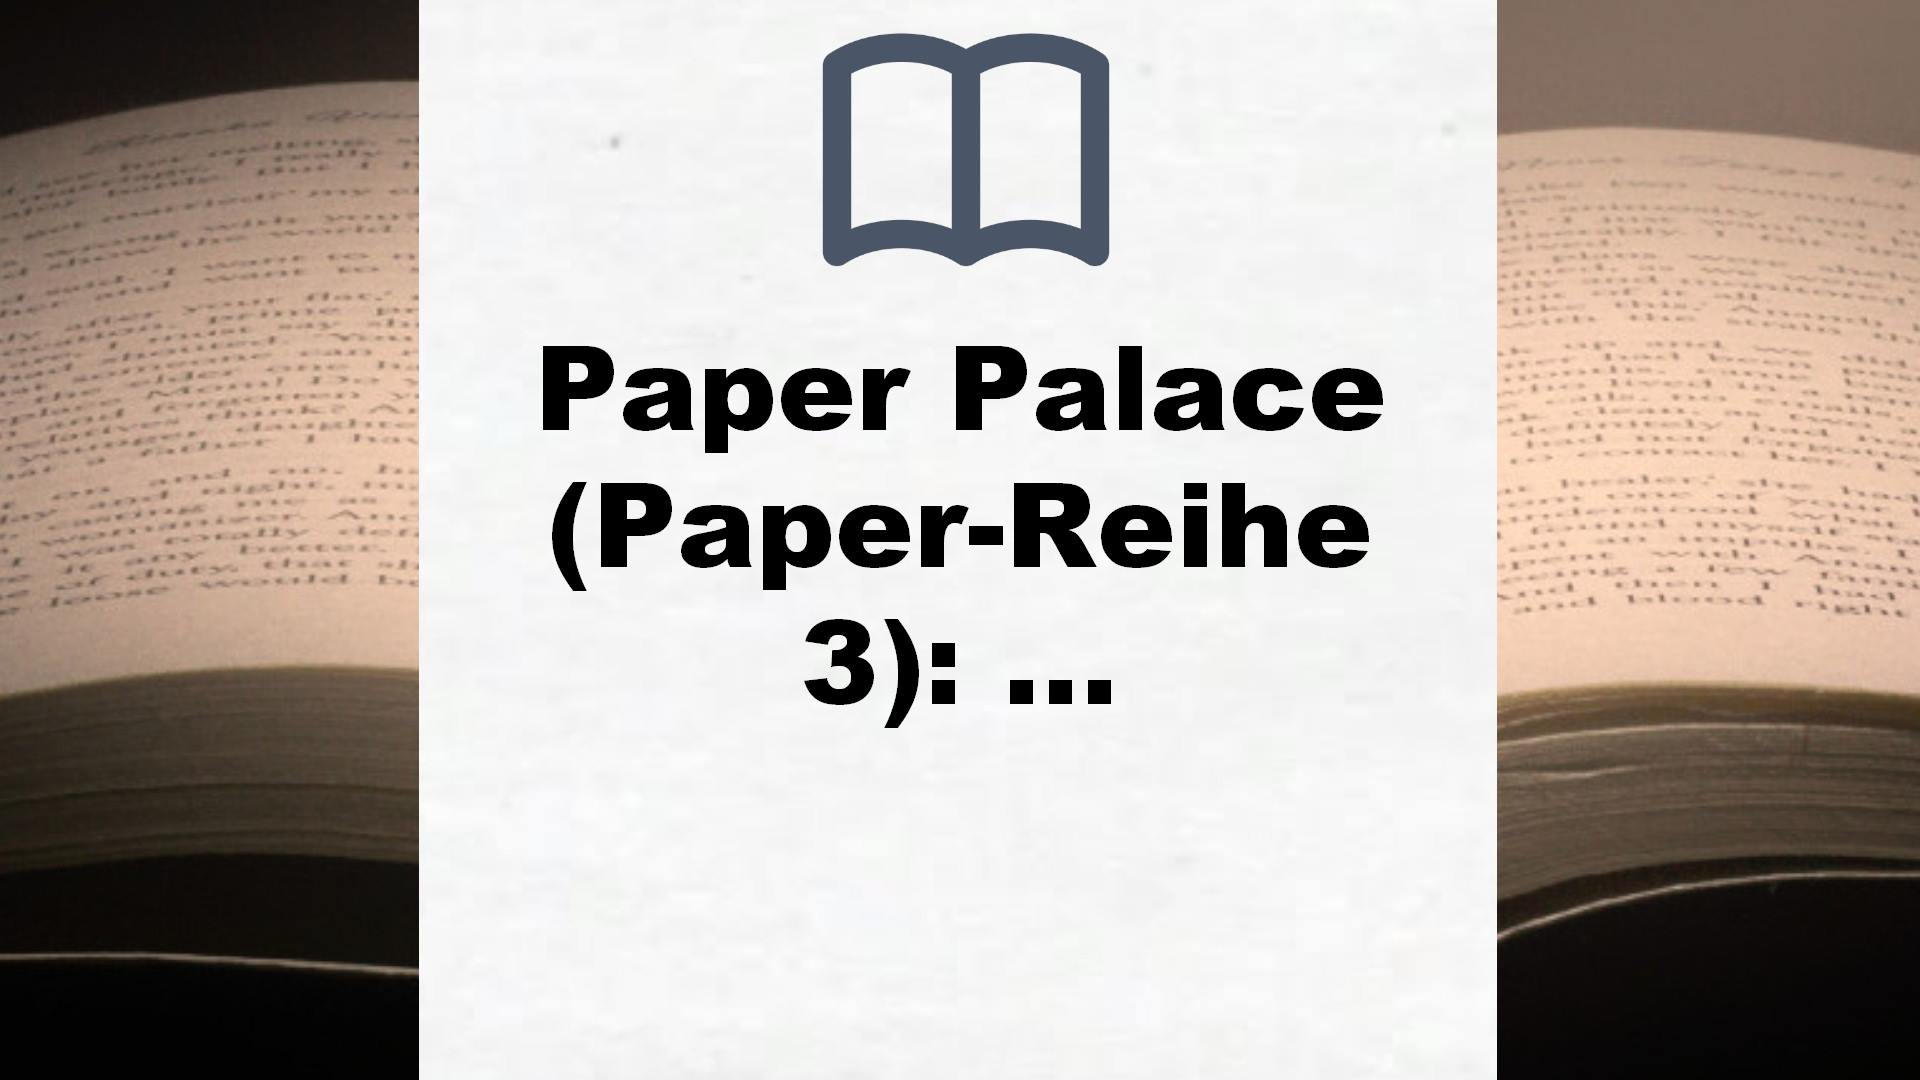 Paper Palace (Paper-Reihe 3): Die Verführung – Buchrezension